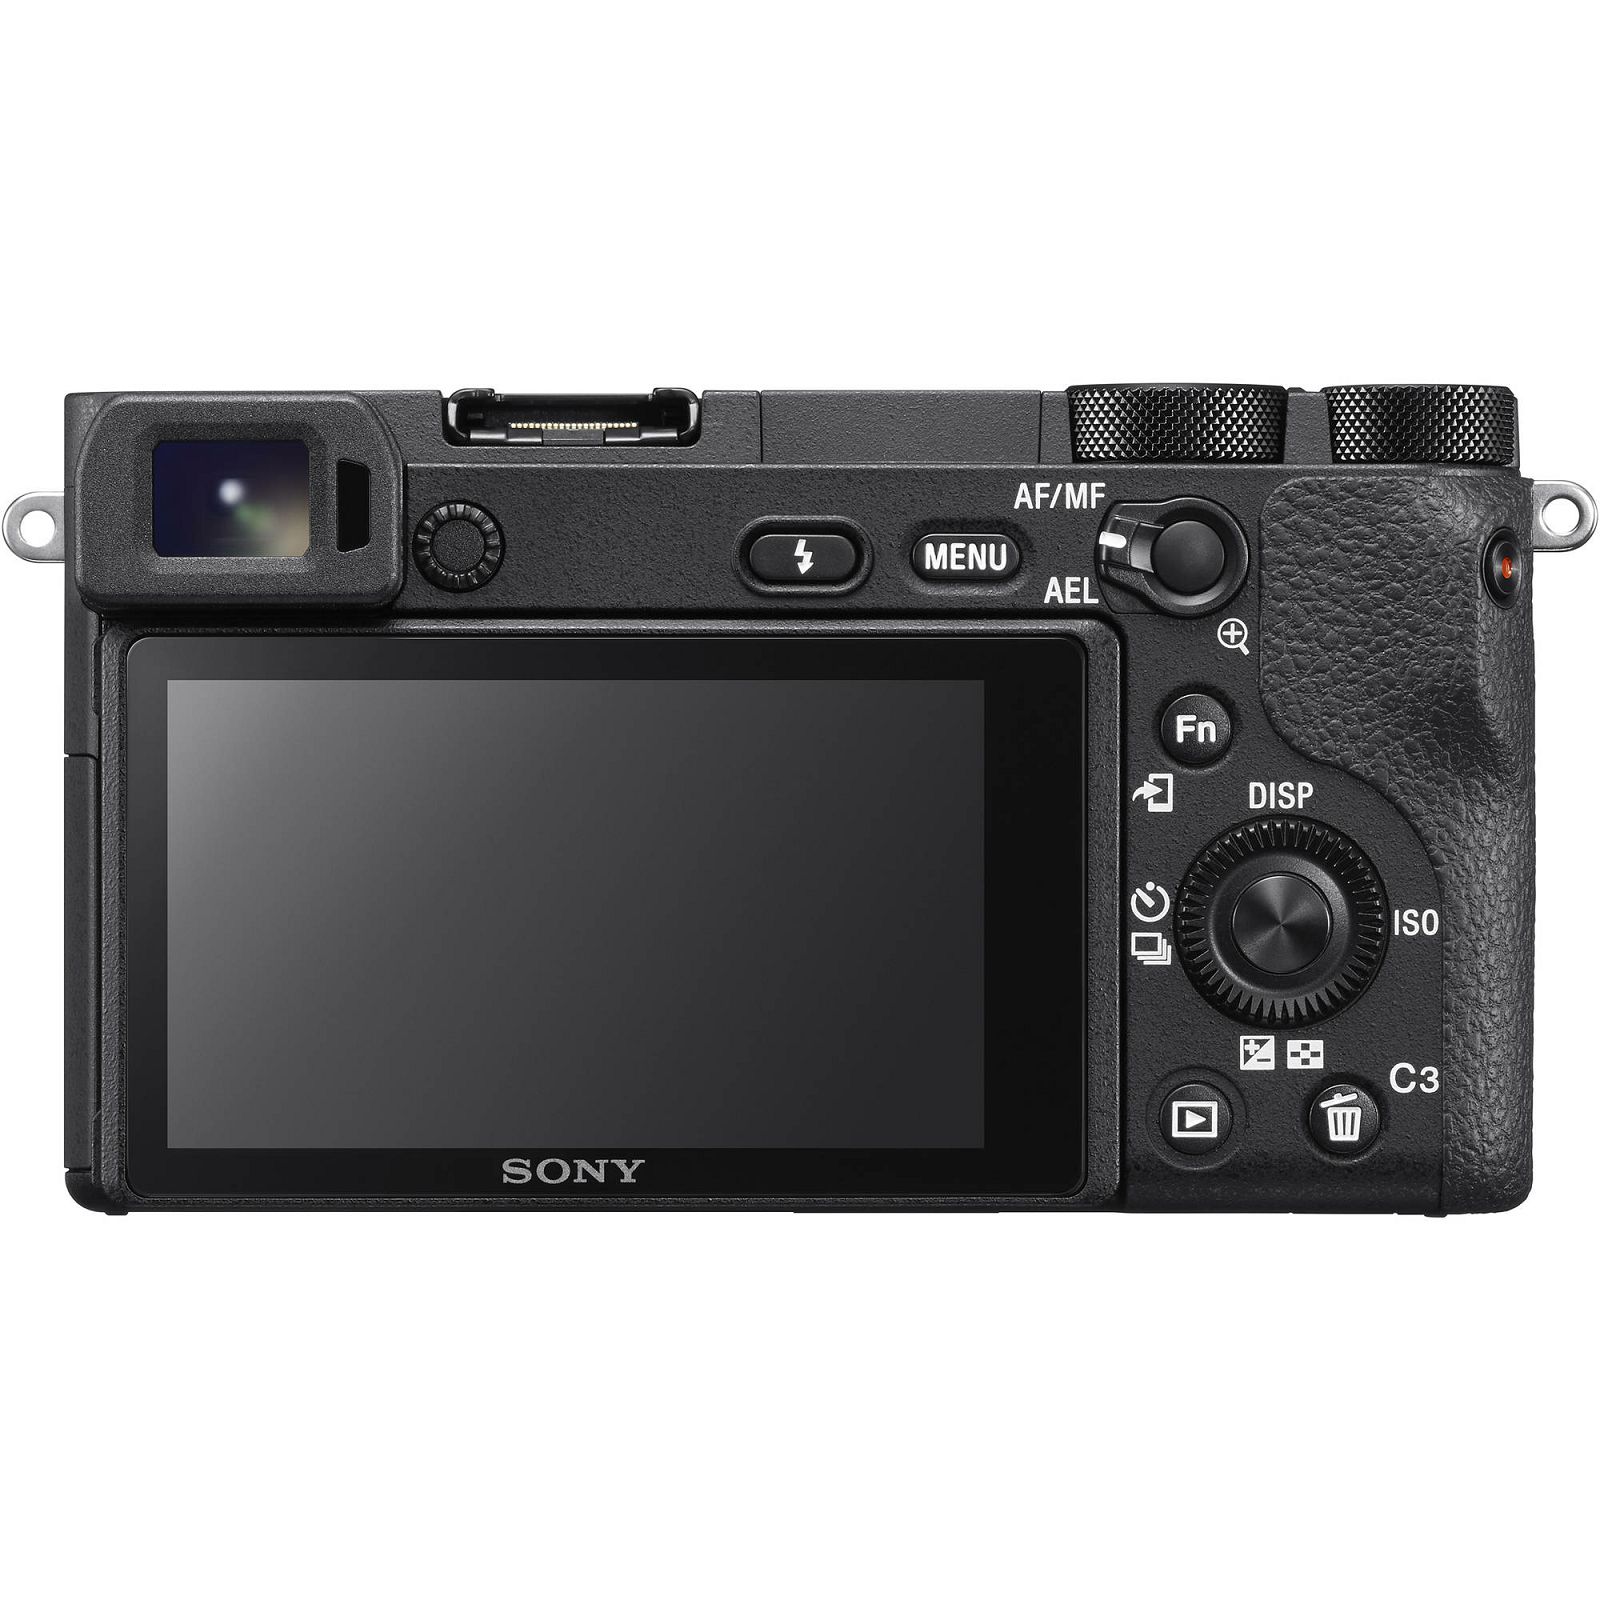 Sony Alpha a6500 + 18-135 f/3.5-5.6 OSS KIT Black Mirrorless Digital Camera crni bezrcalni digitalni fotoaparat i allround objektiv SEL18135 18-135mm F3.5-5.6 ILCE-6500MB ILCE6500MB ILCE6500MB.CEC